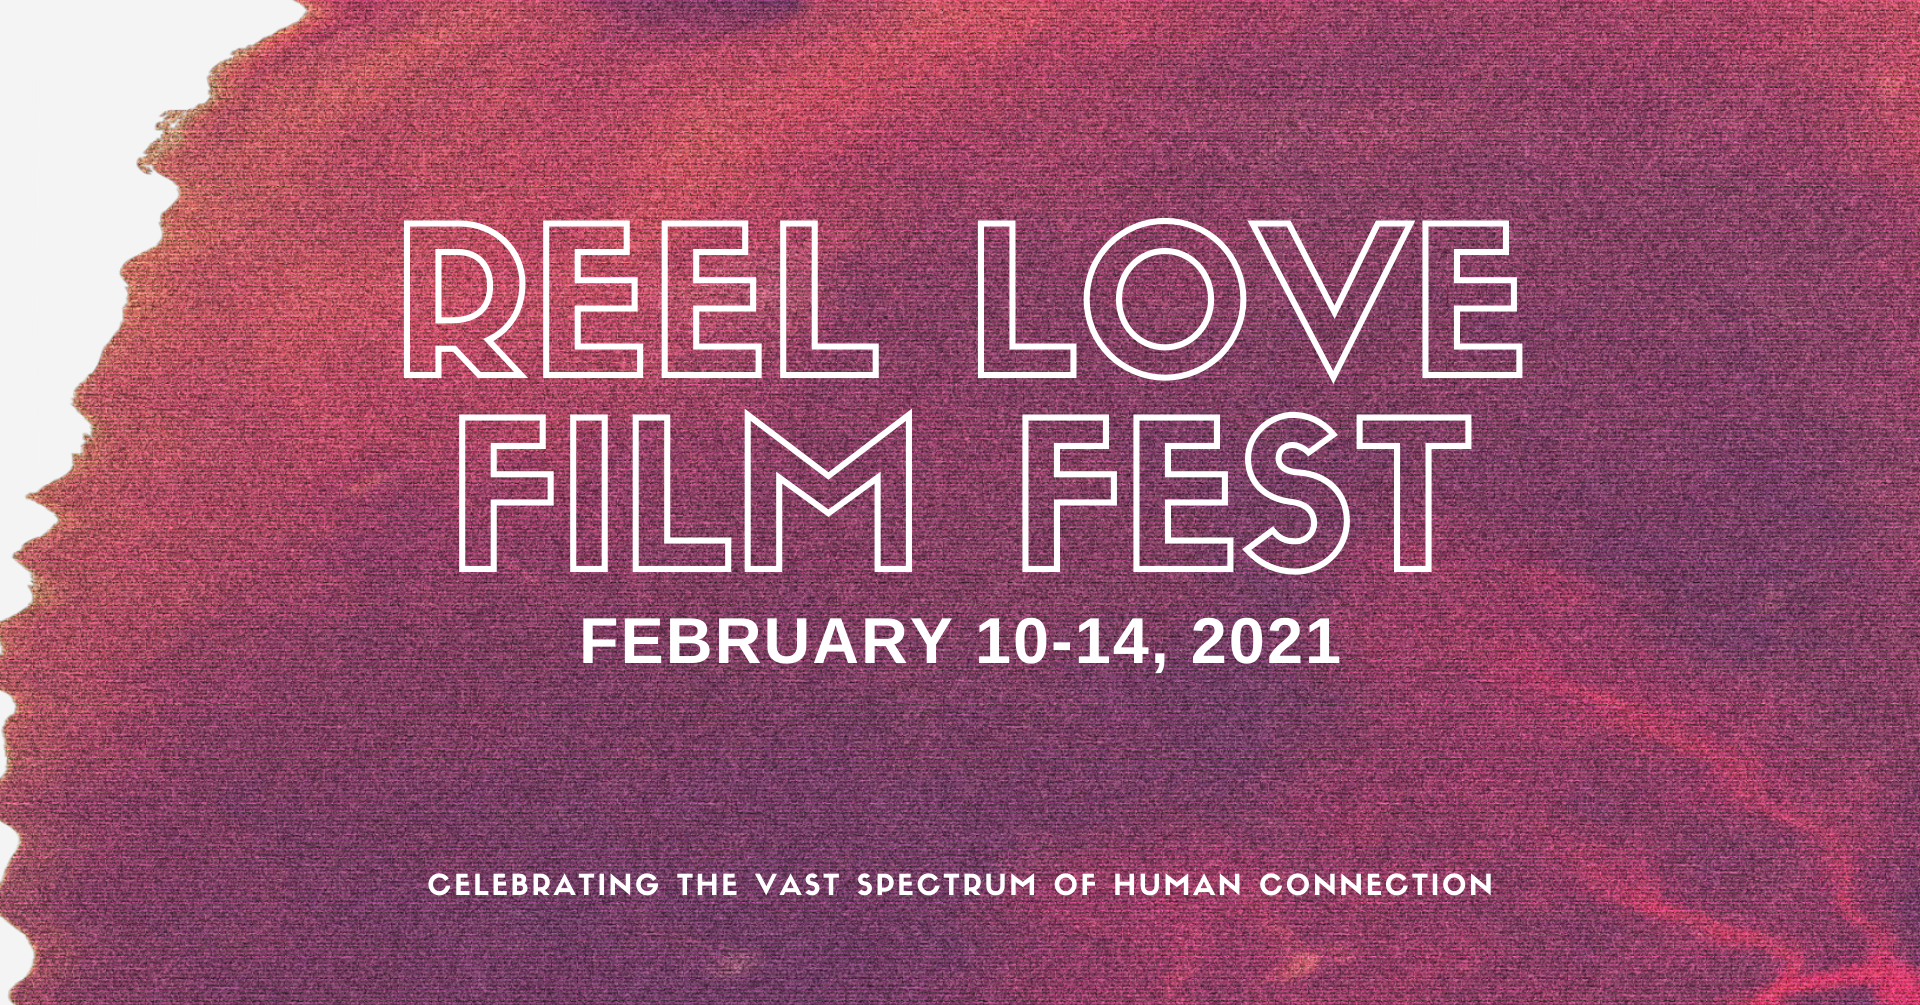 Reel Love Film Fest. 2021. 